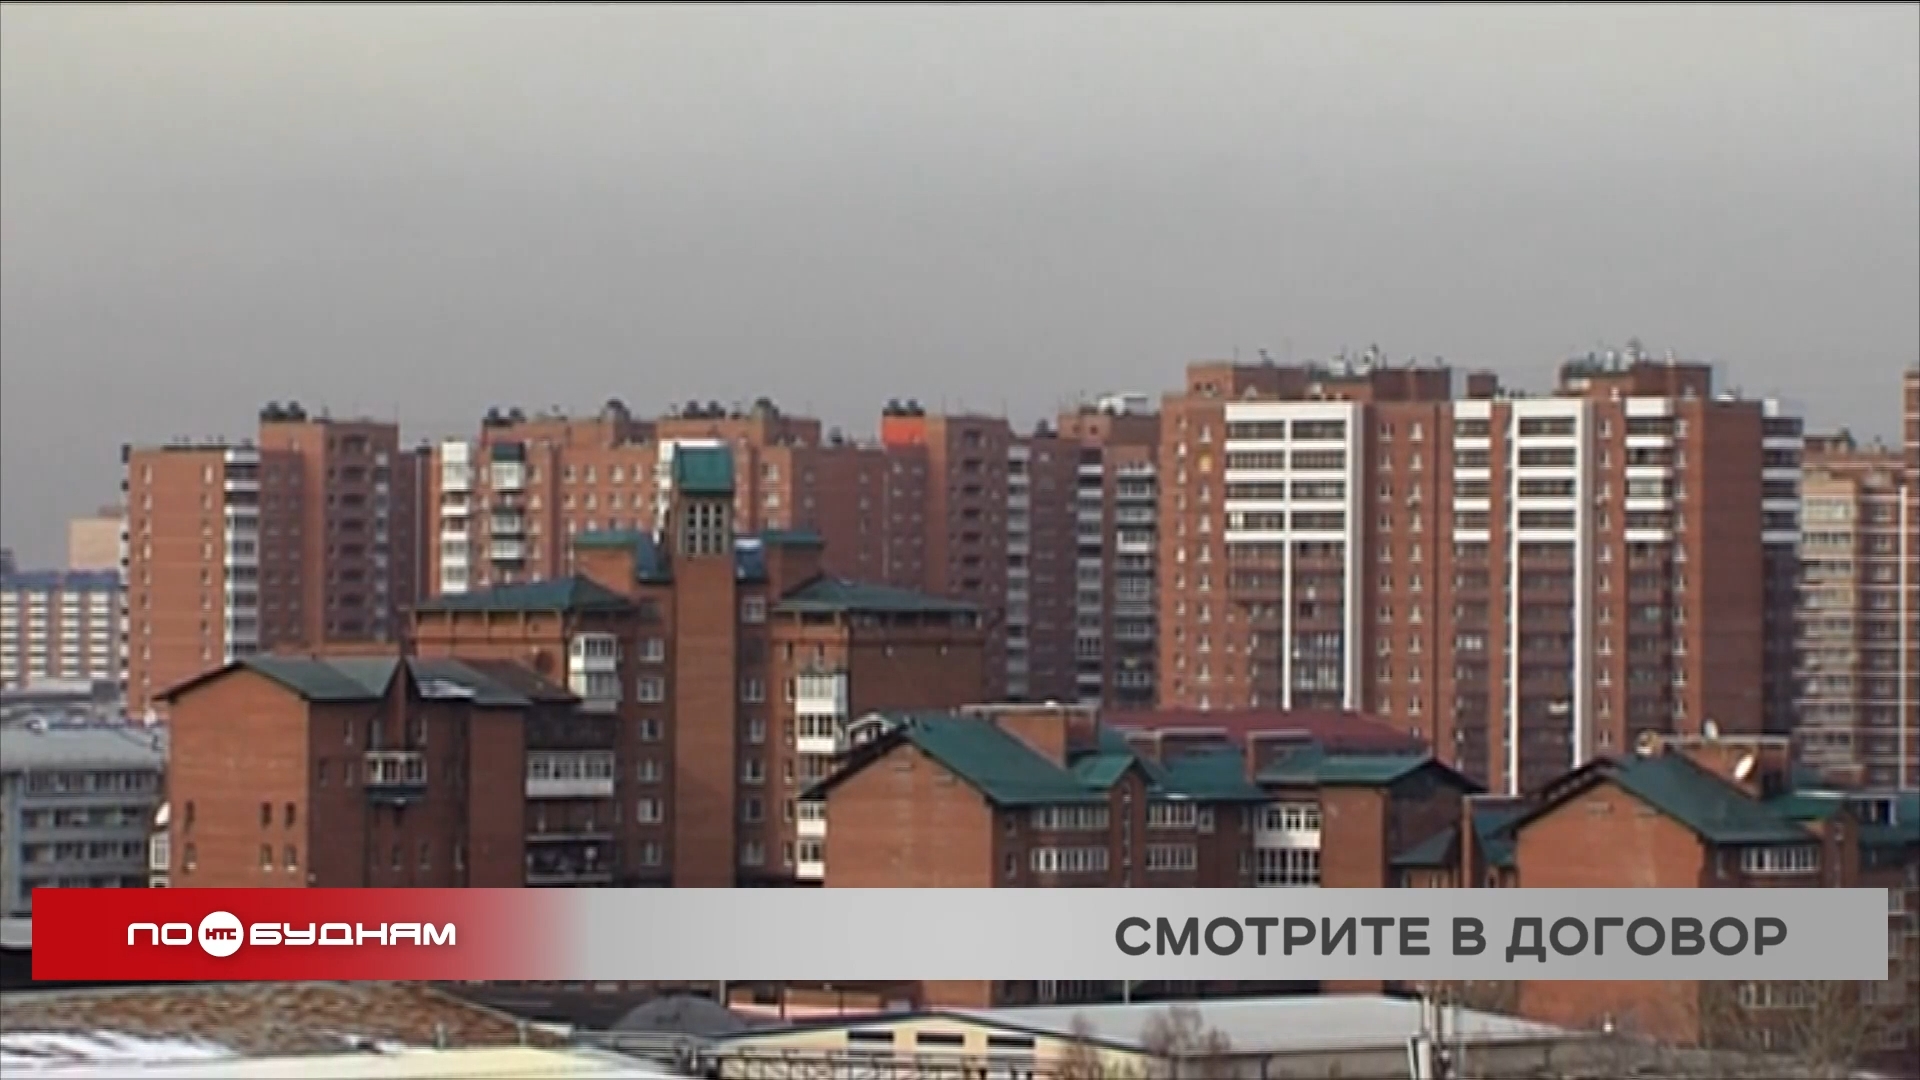 Проблемная аренда, или Квартиранты отказывают съезжать со съёмного жилья в Иркутске